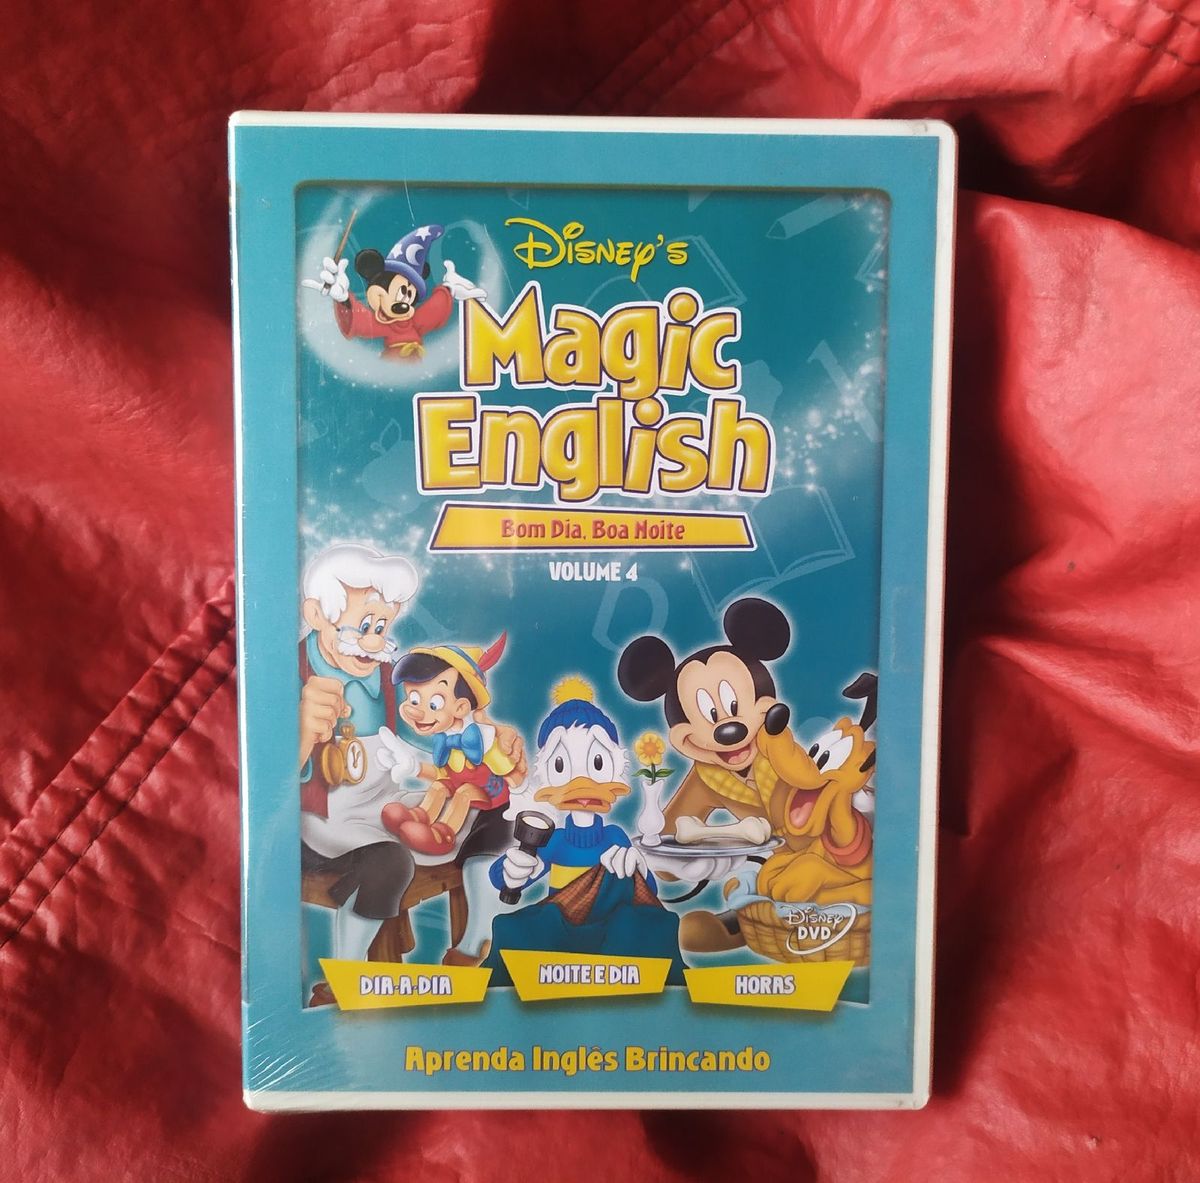 Magic English Volume 4 Bom Dia,Boa Noite Disney Lacrado | Filme e Série Dvd  Nunca Usado 81481218 | enjoei